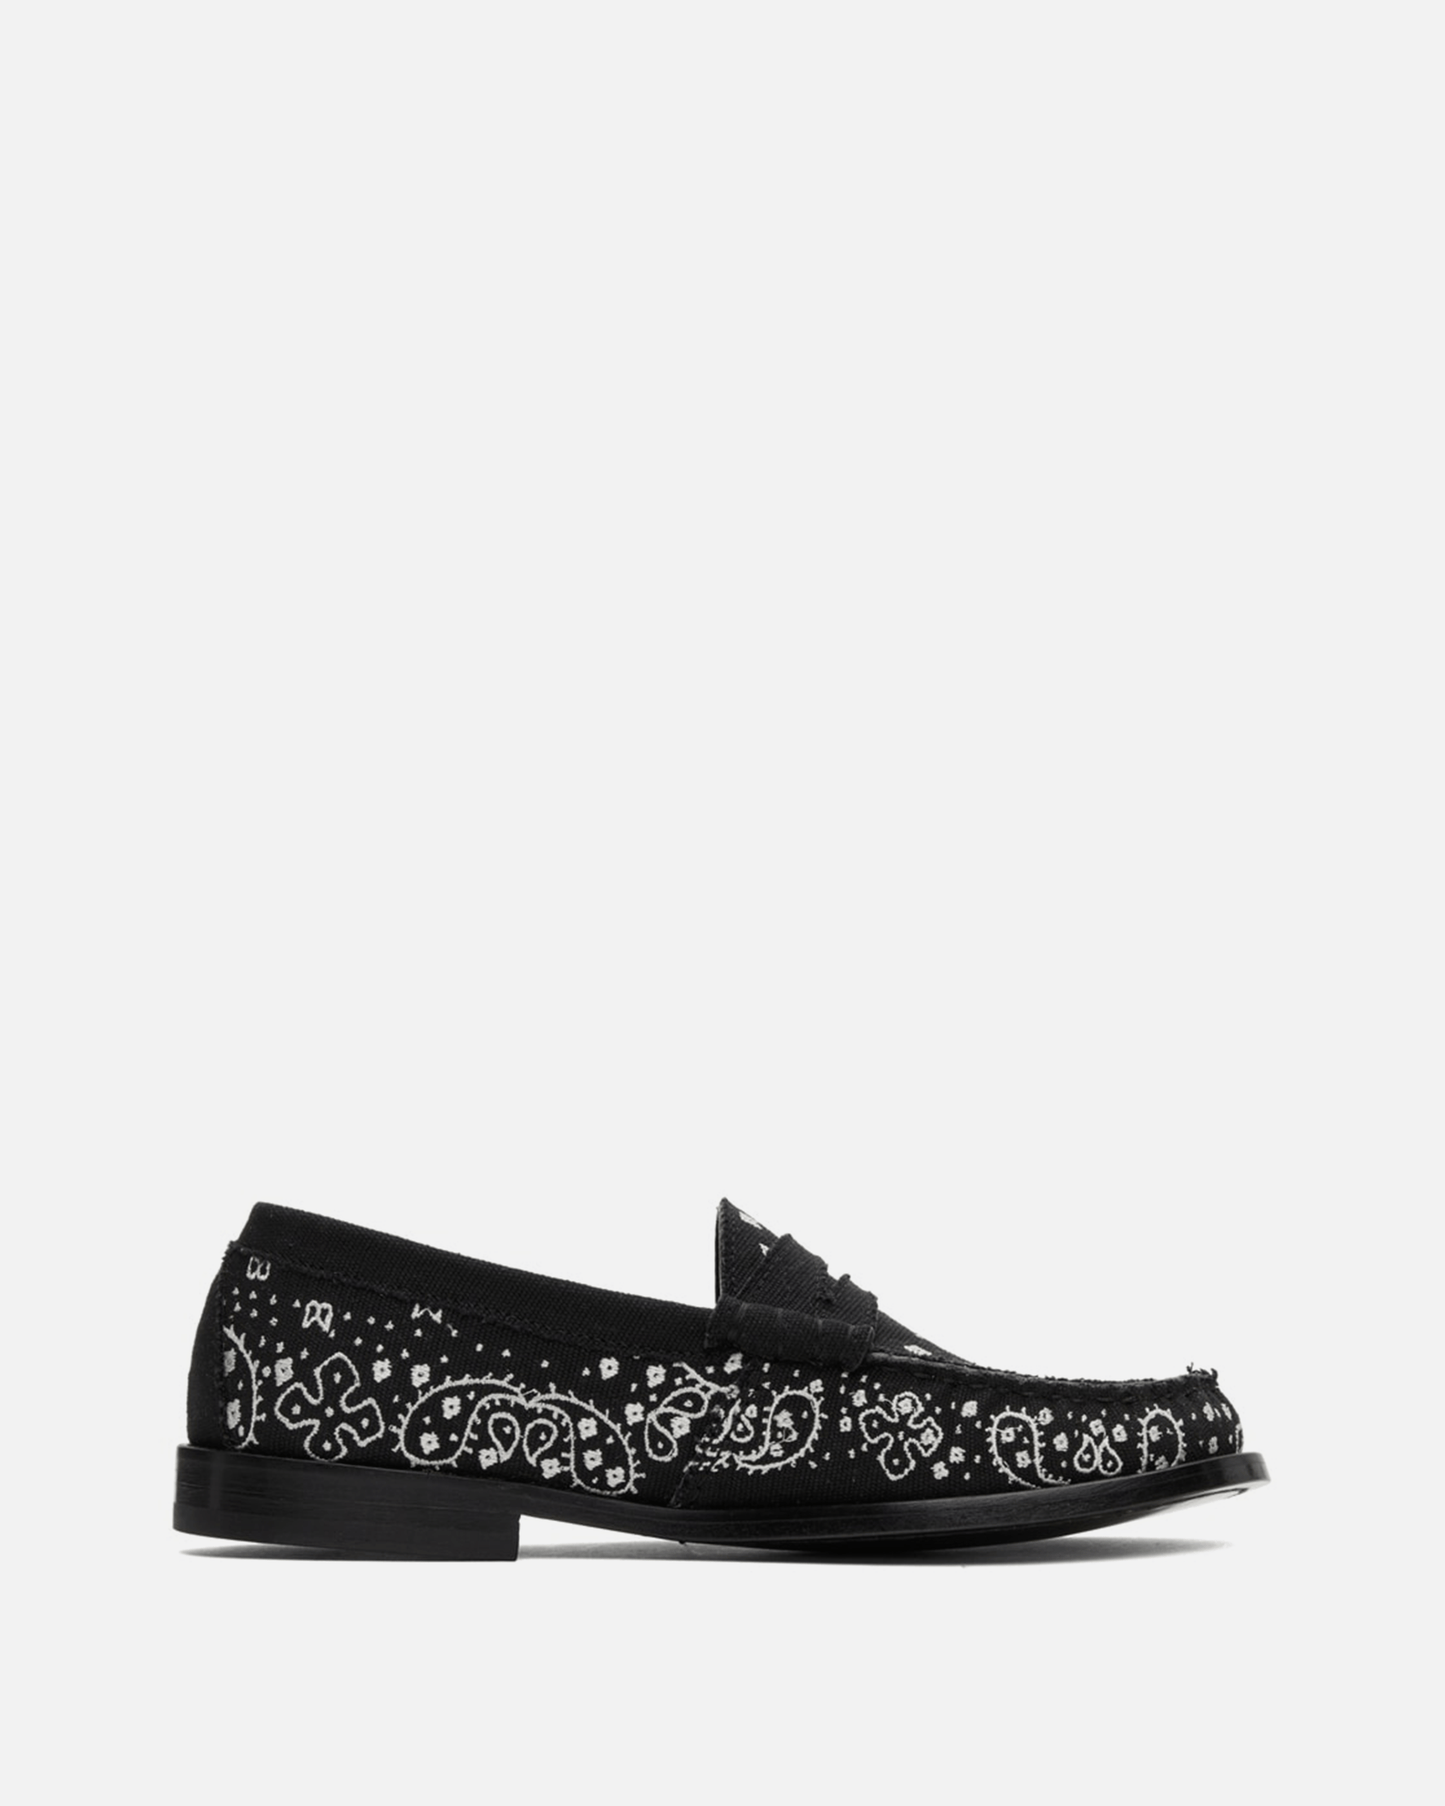 Rhude Men's Shoes Bandana Loafer in Black/White